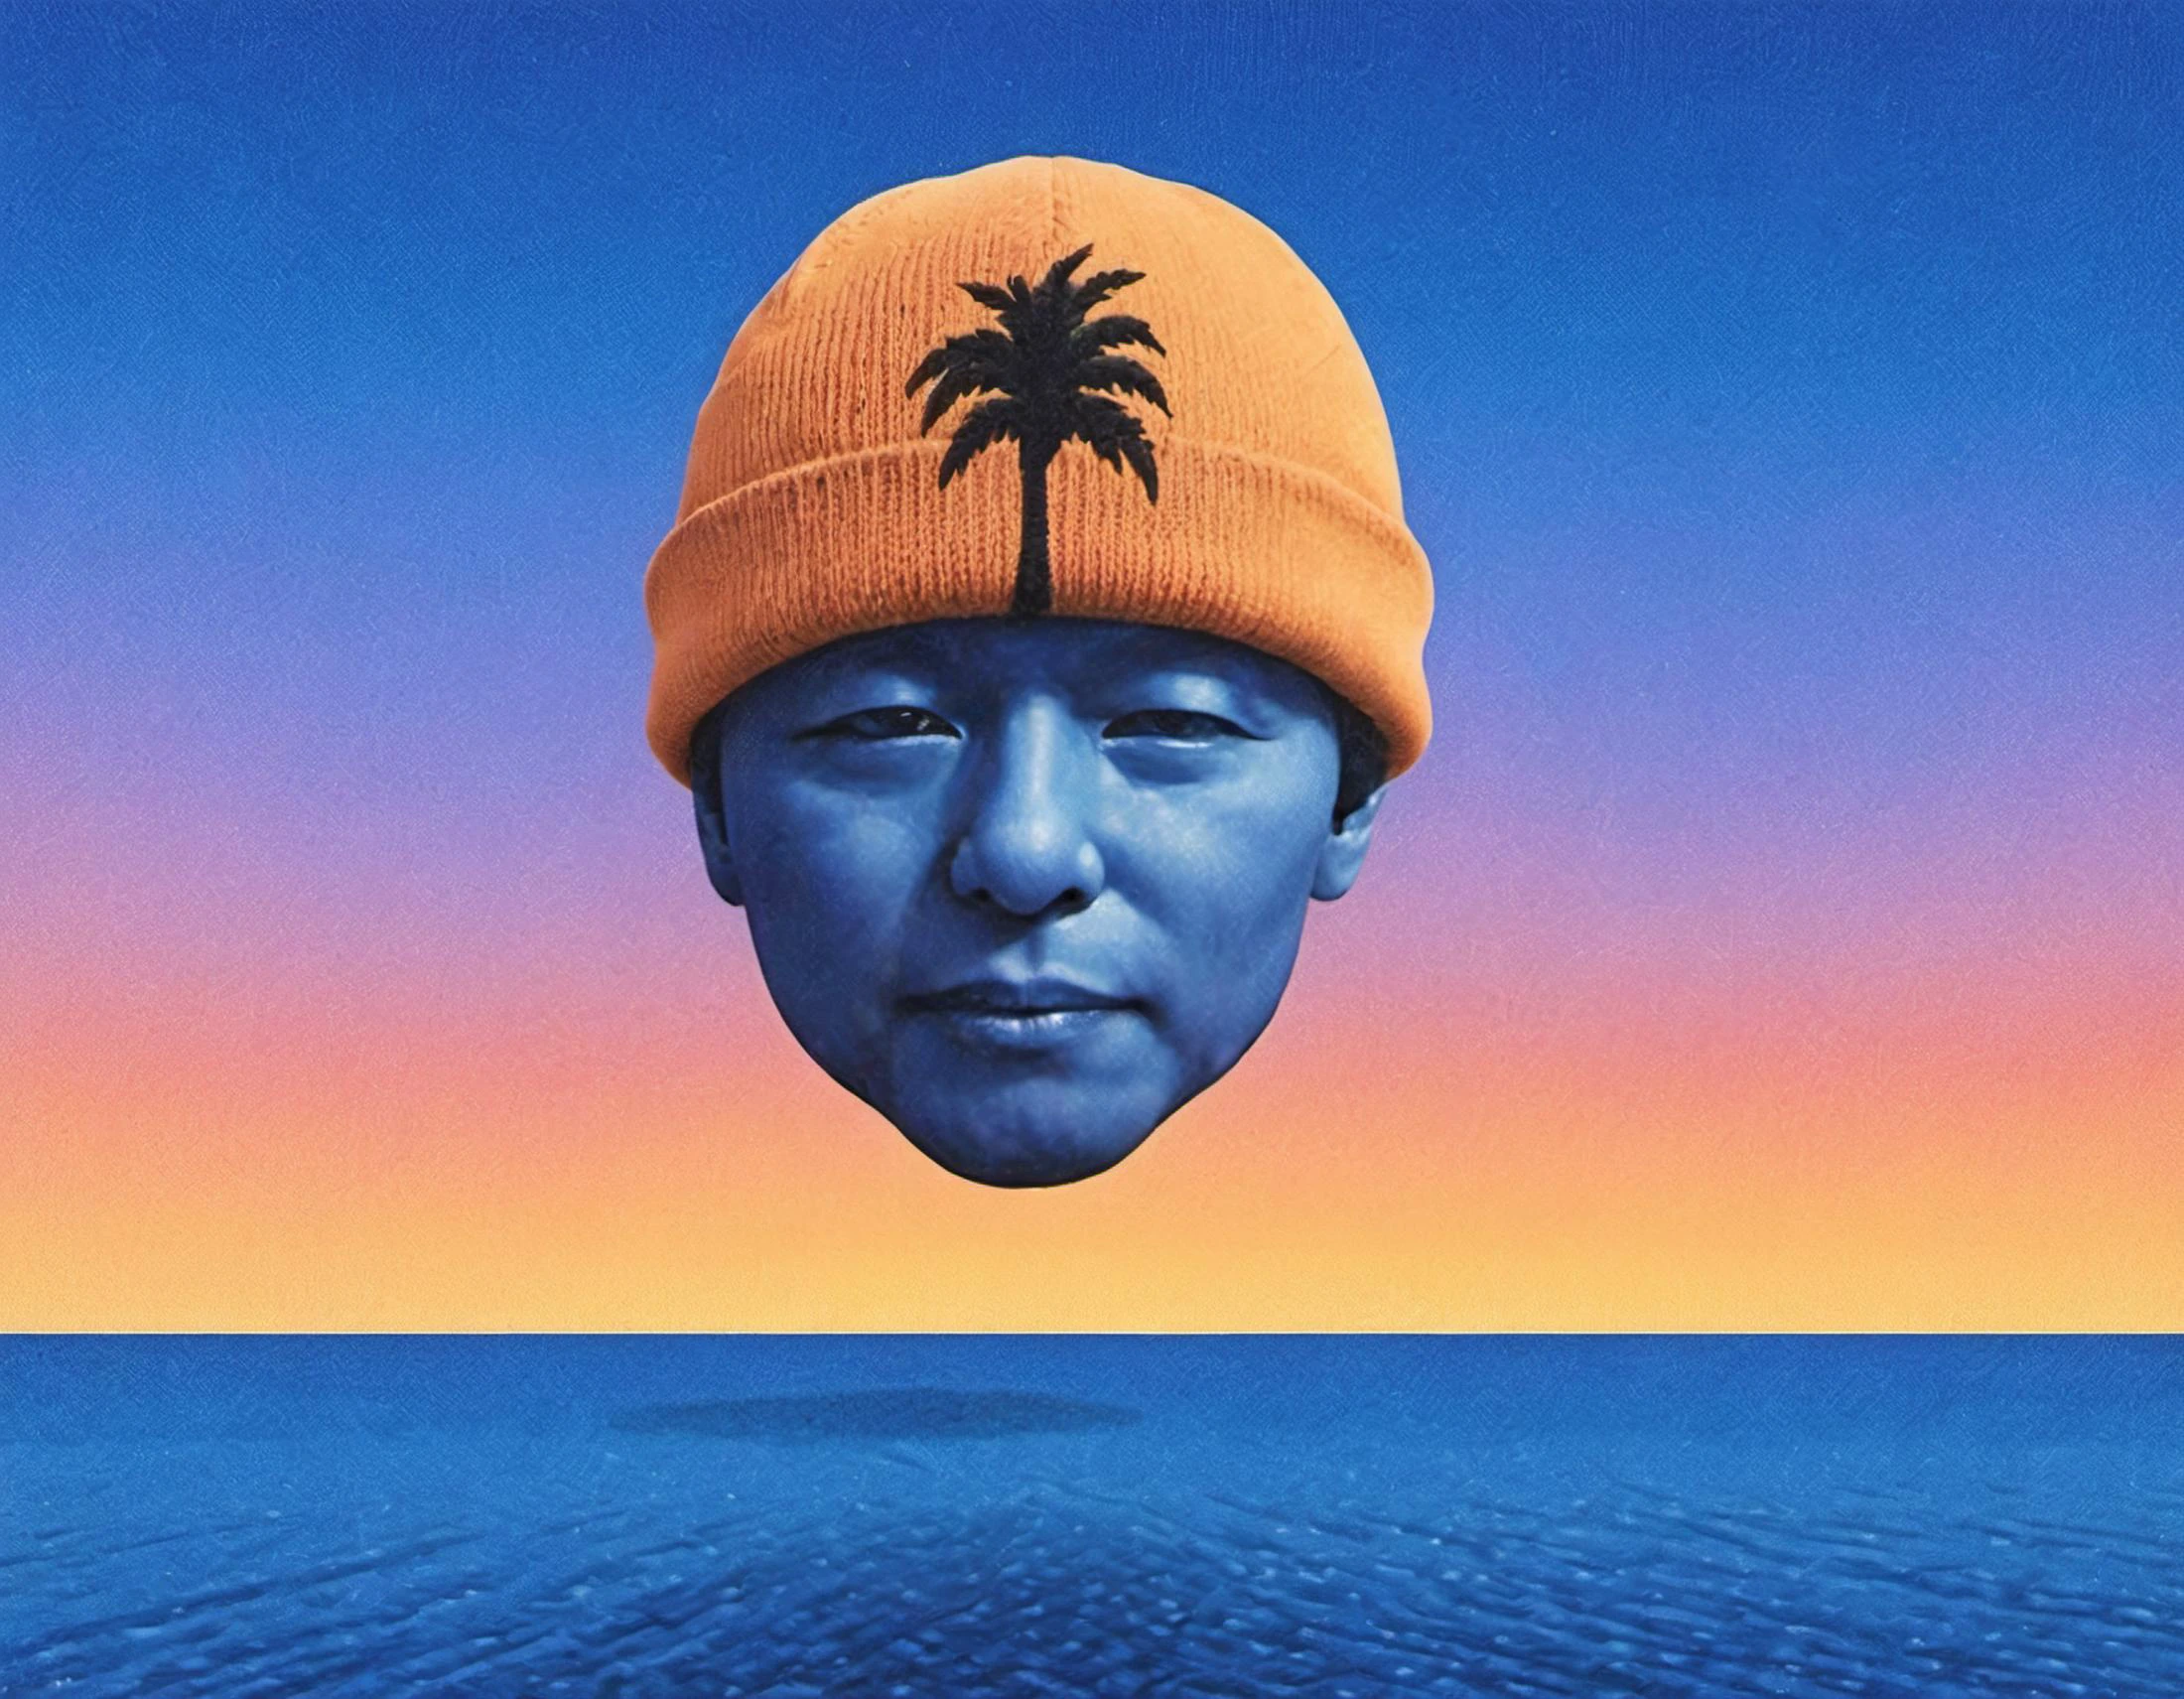 해변, 야자수, 태양은 하늘에 떠 있는 니트 모자를 쓴 남자의 형체가 없는 머리의 빛나는 모양으로 변했습니다., 그라데이션 하늘, 